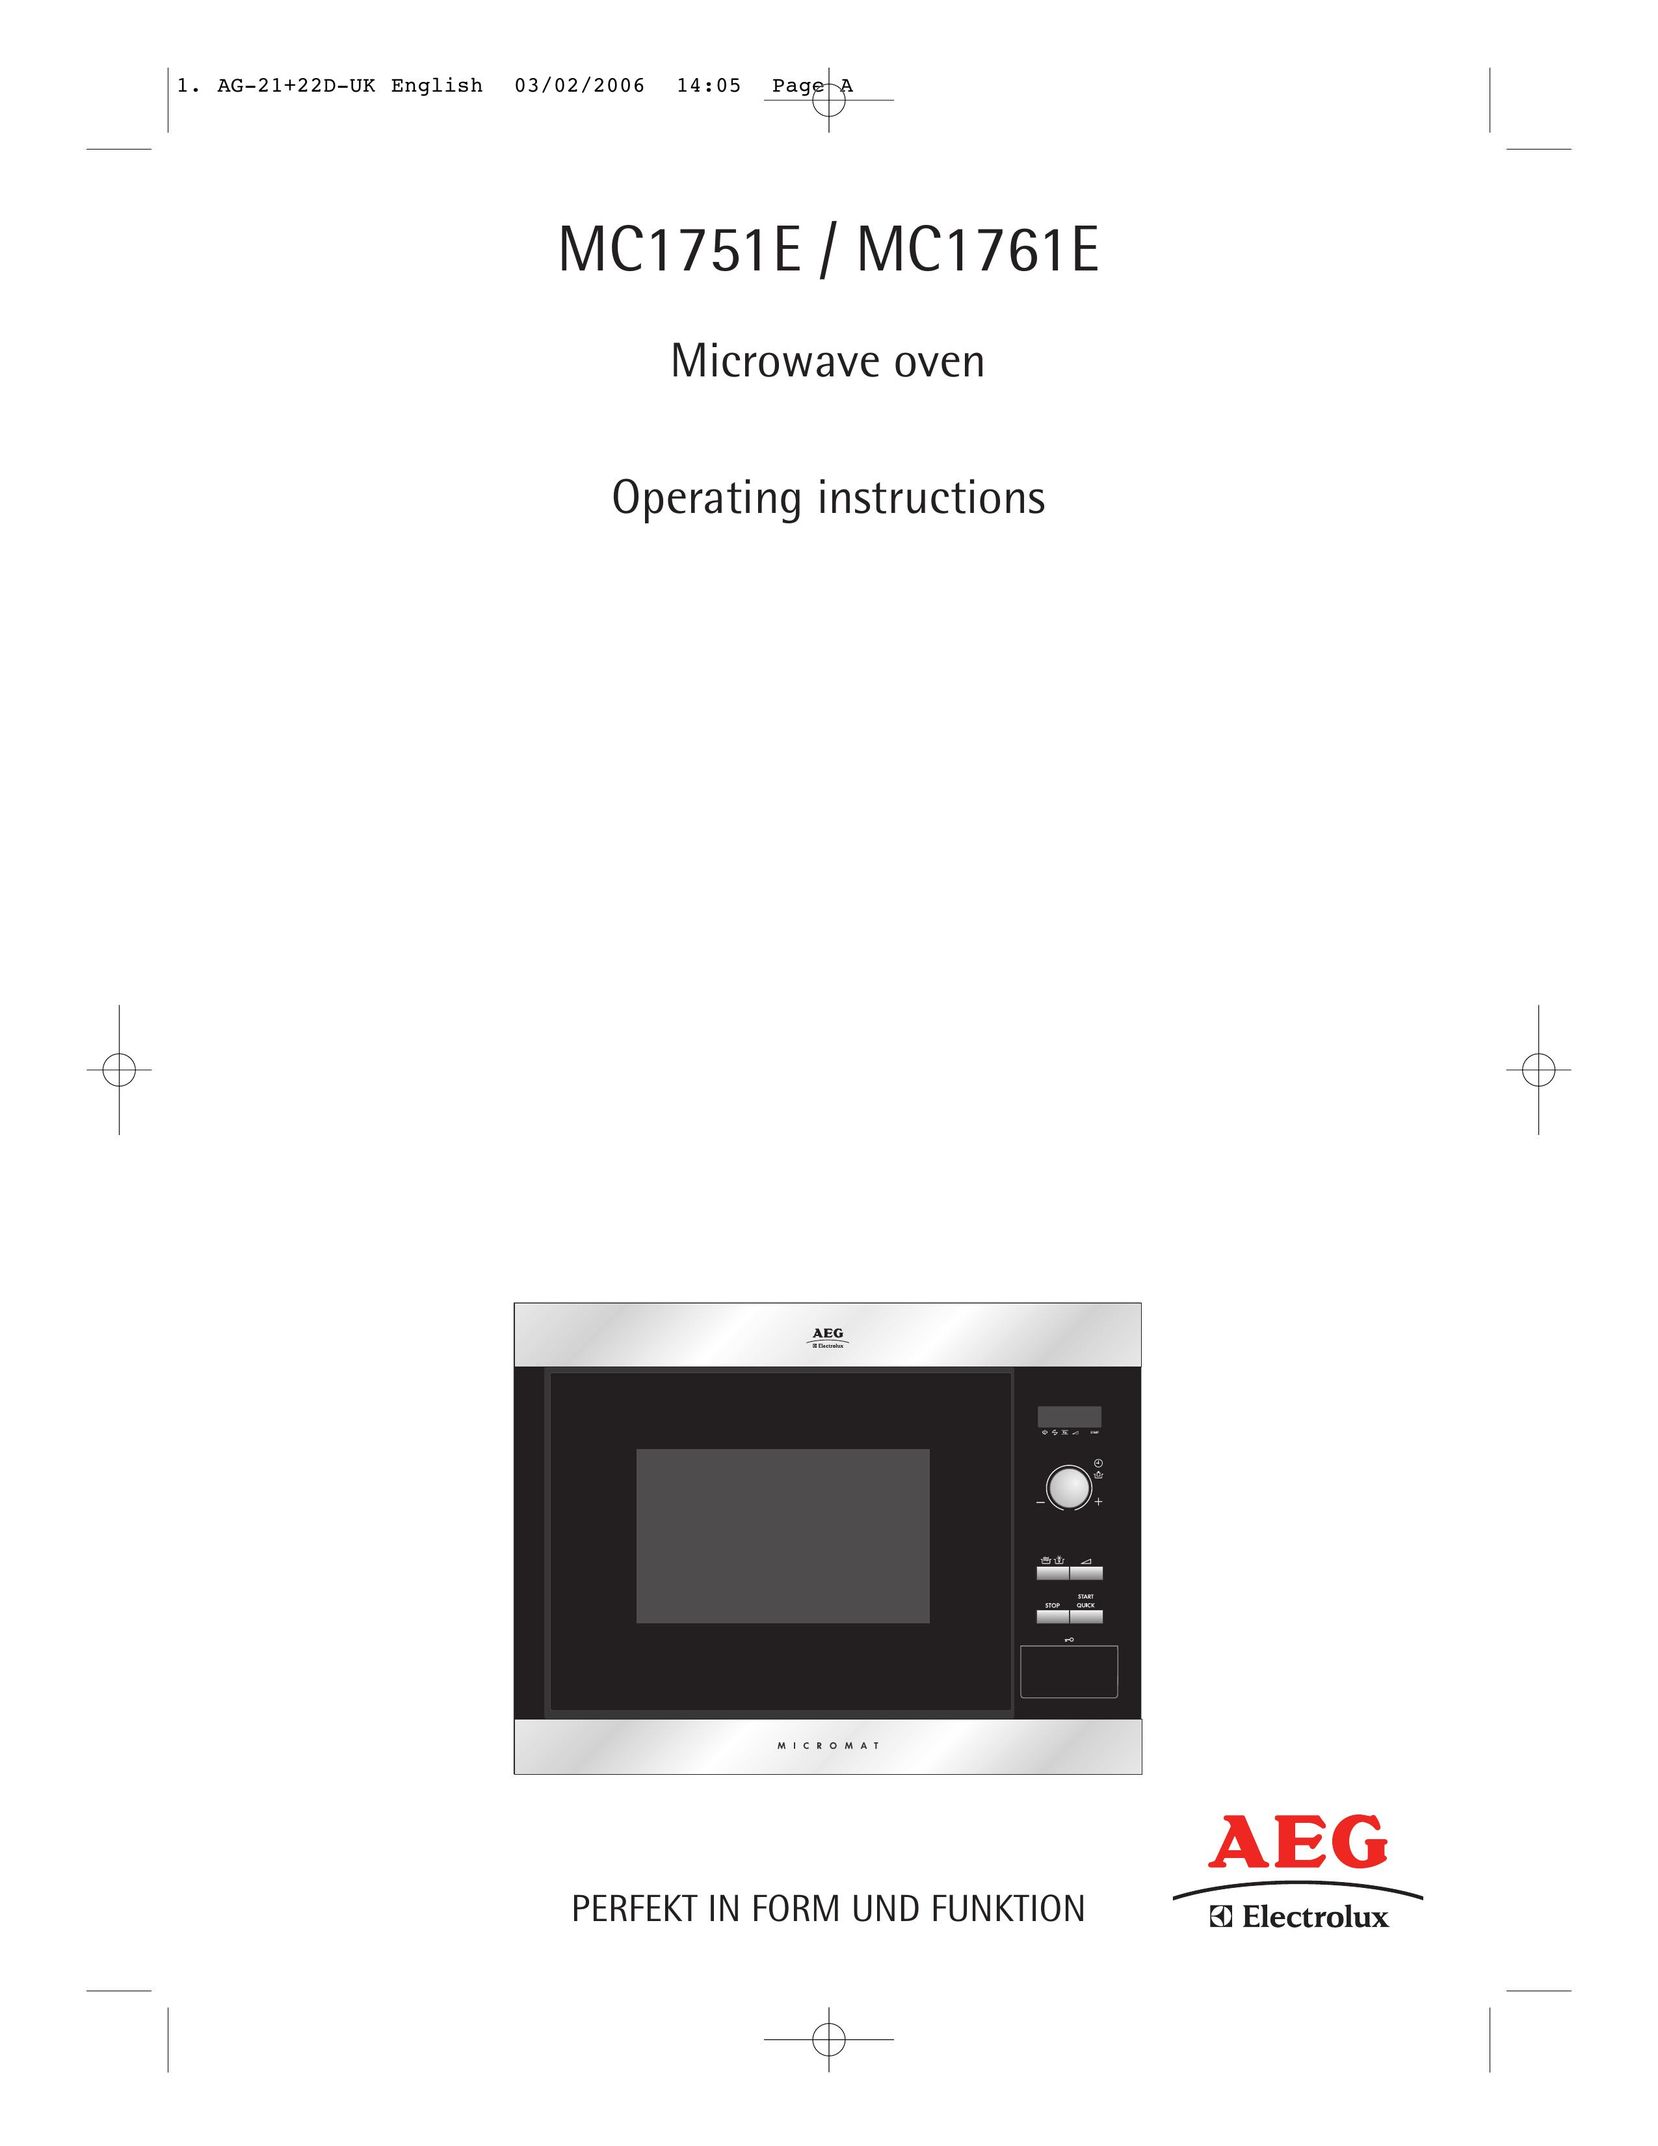 AEG MC1761E Microwave Oven User Manual